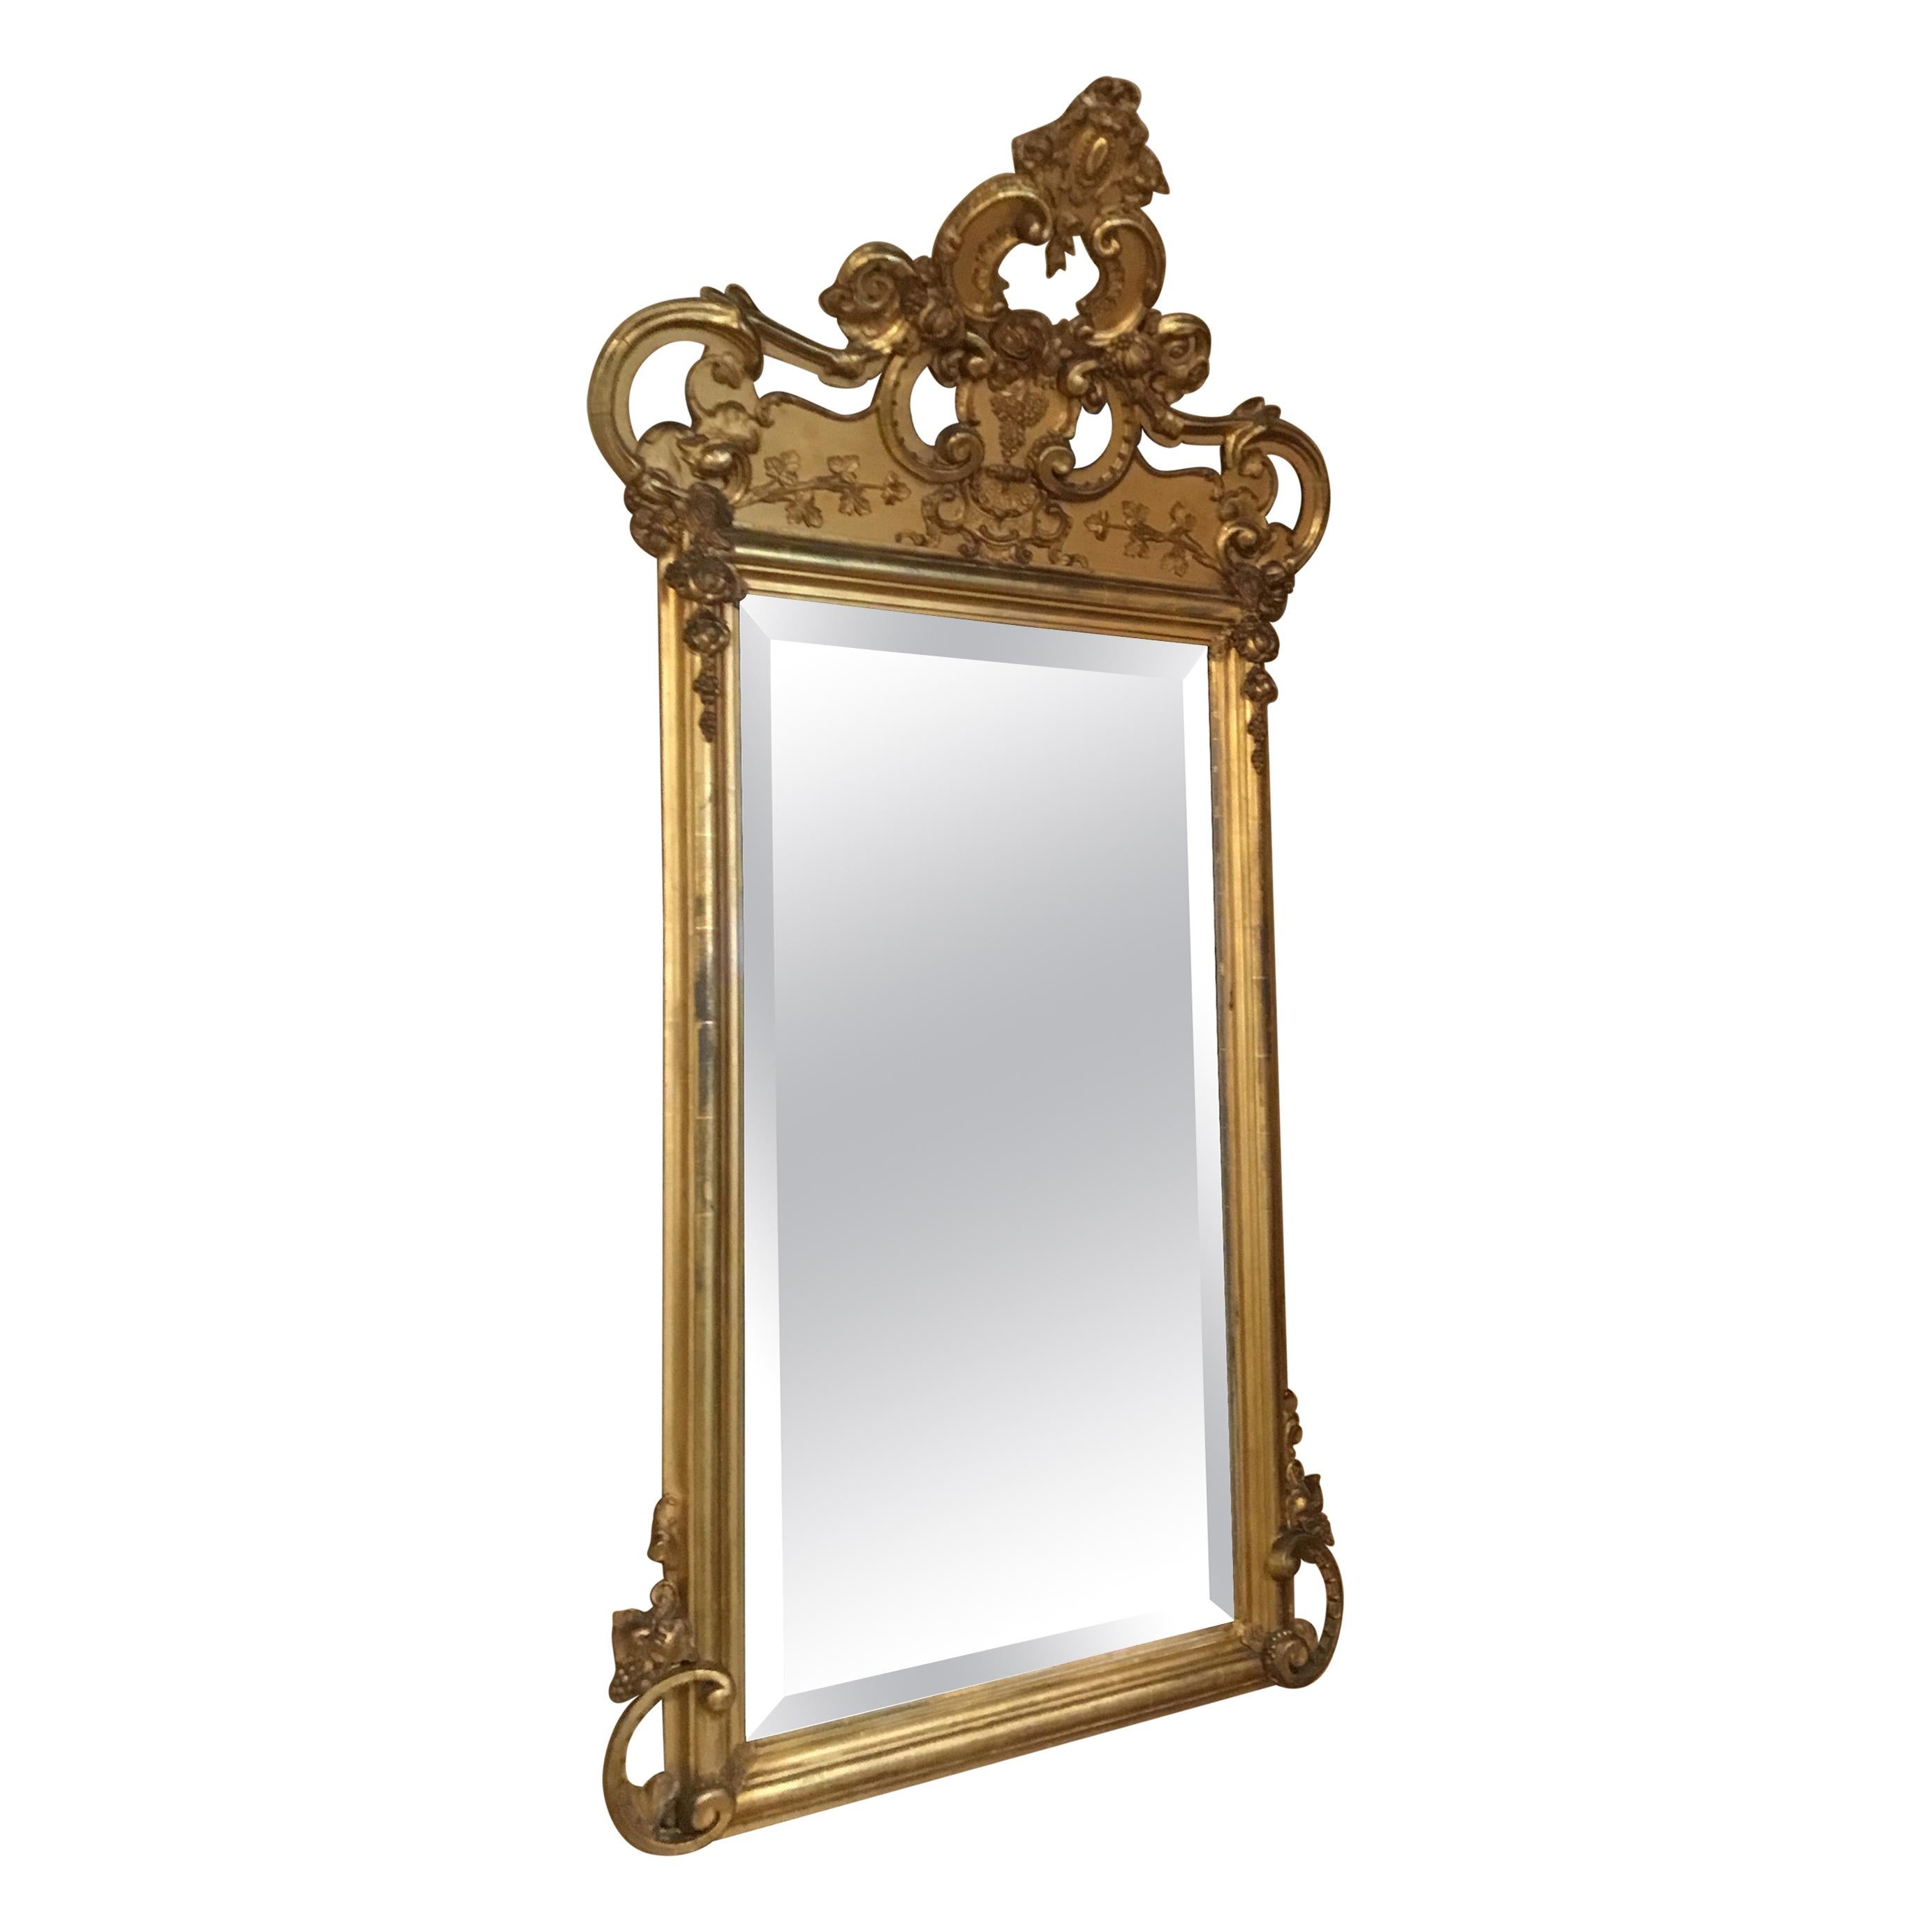 Miroir français du 19ème siècle encadré de bois doré avec plaque biseautée